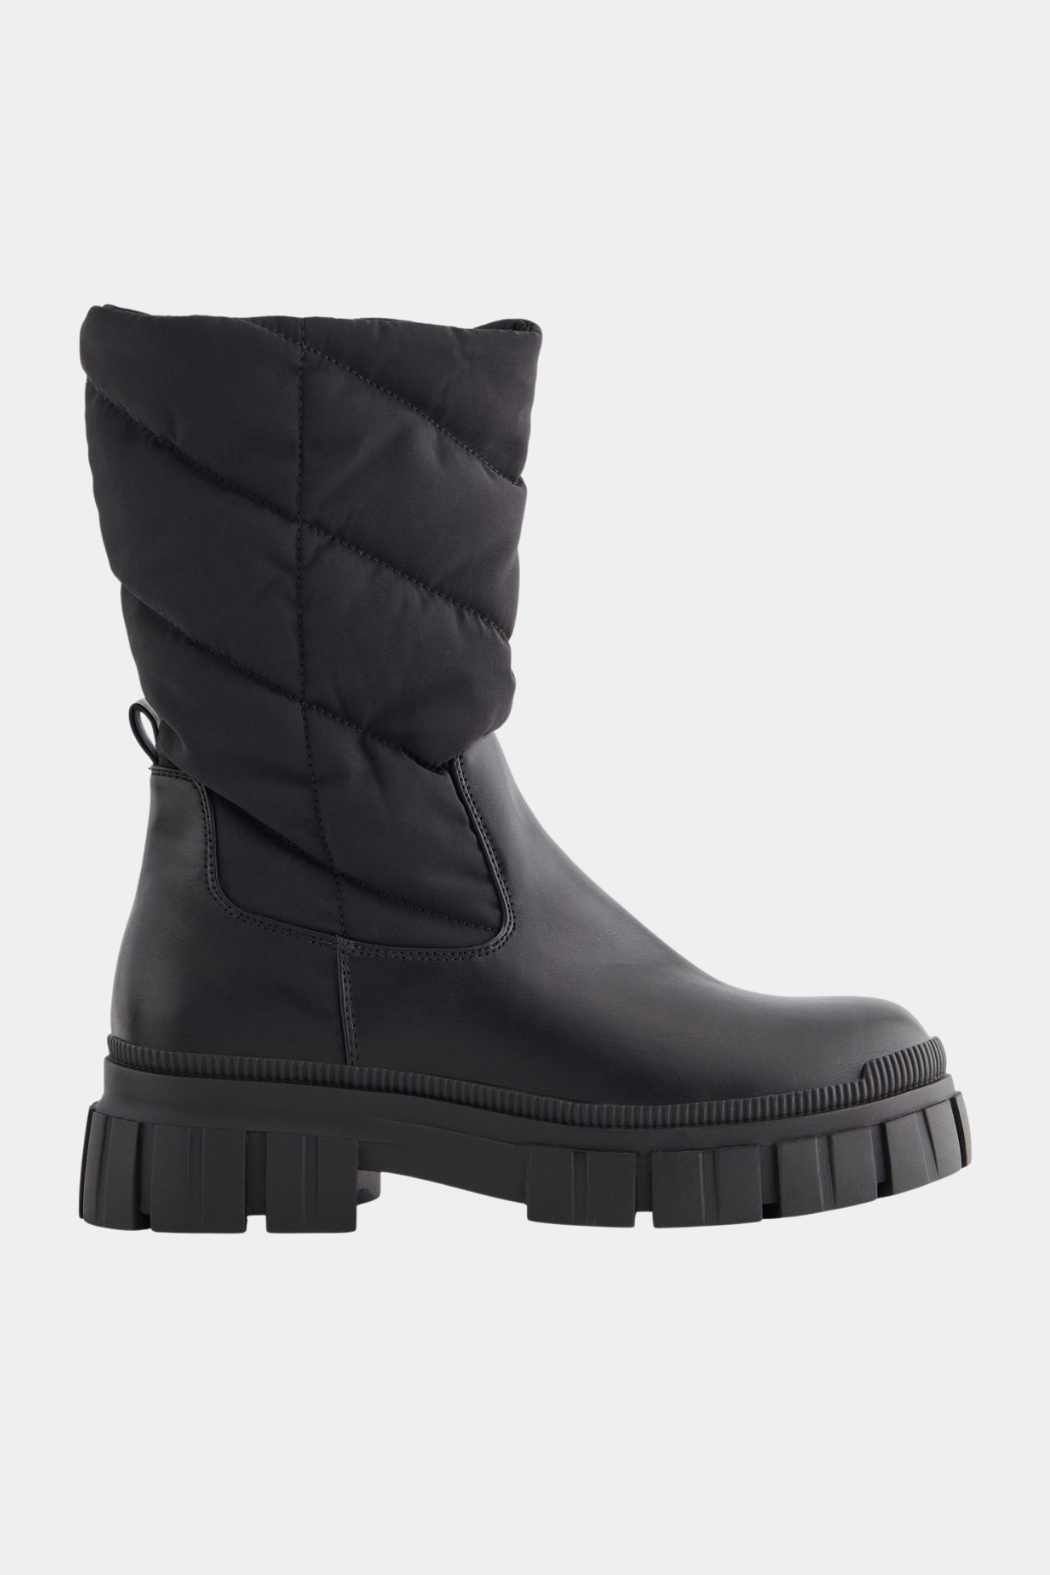 PCJulie high padded boot, black – Visholm